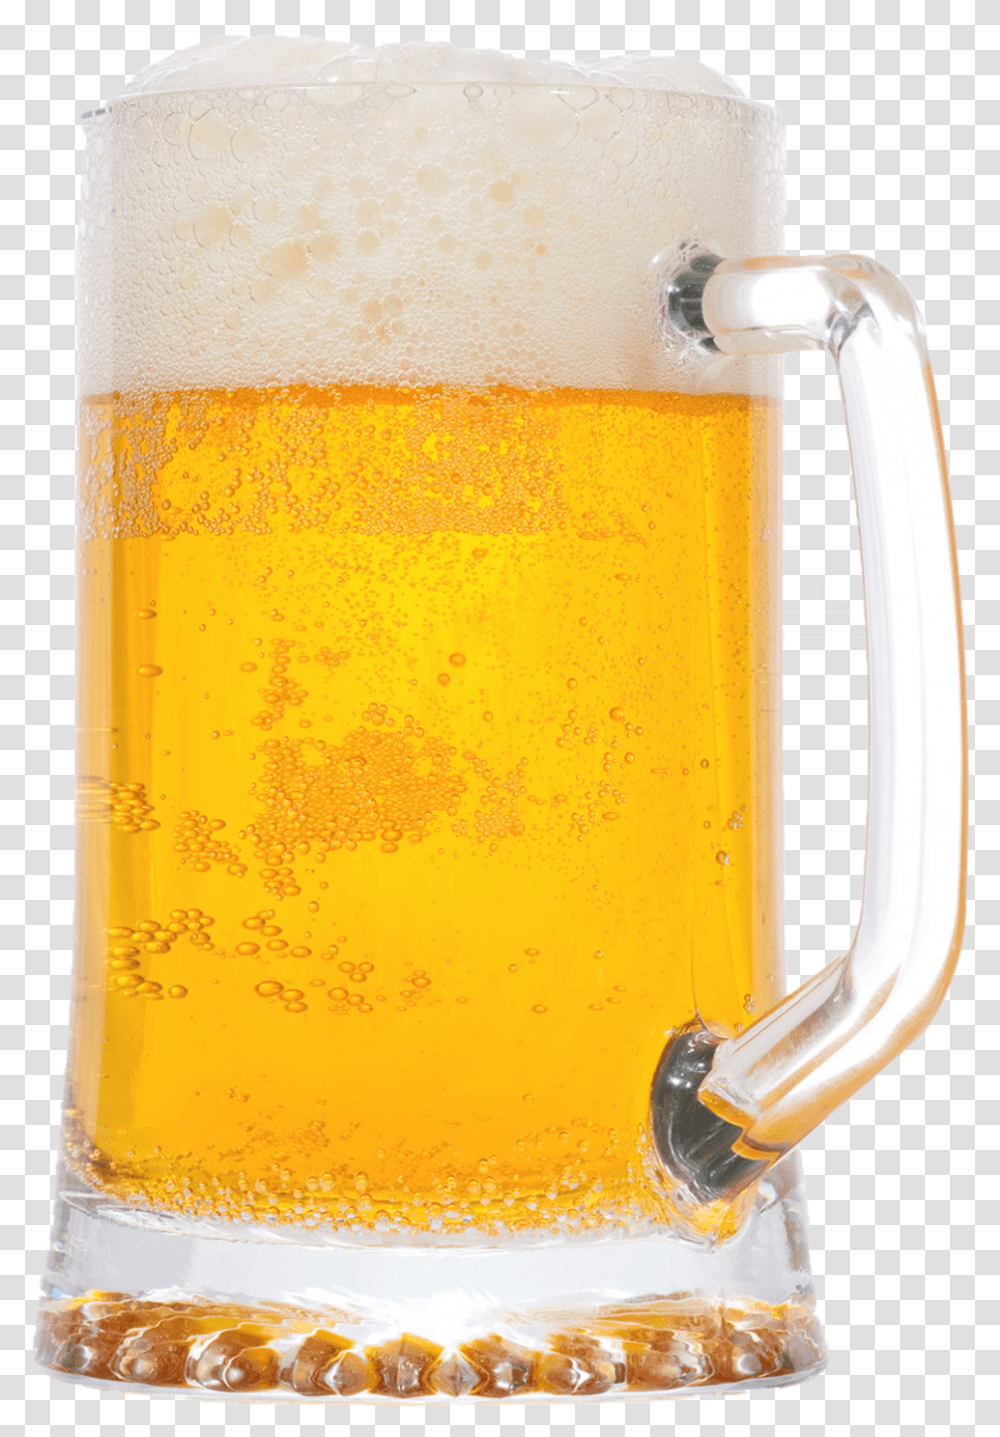 Beer Mug Light Mug Of Beer, Glass, Beer Glass, Alcohol, Beverage Transparent Png